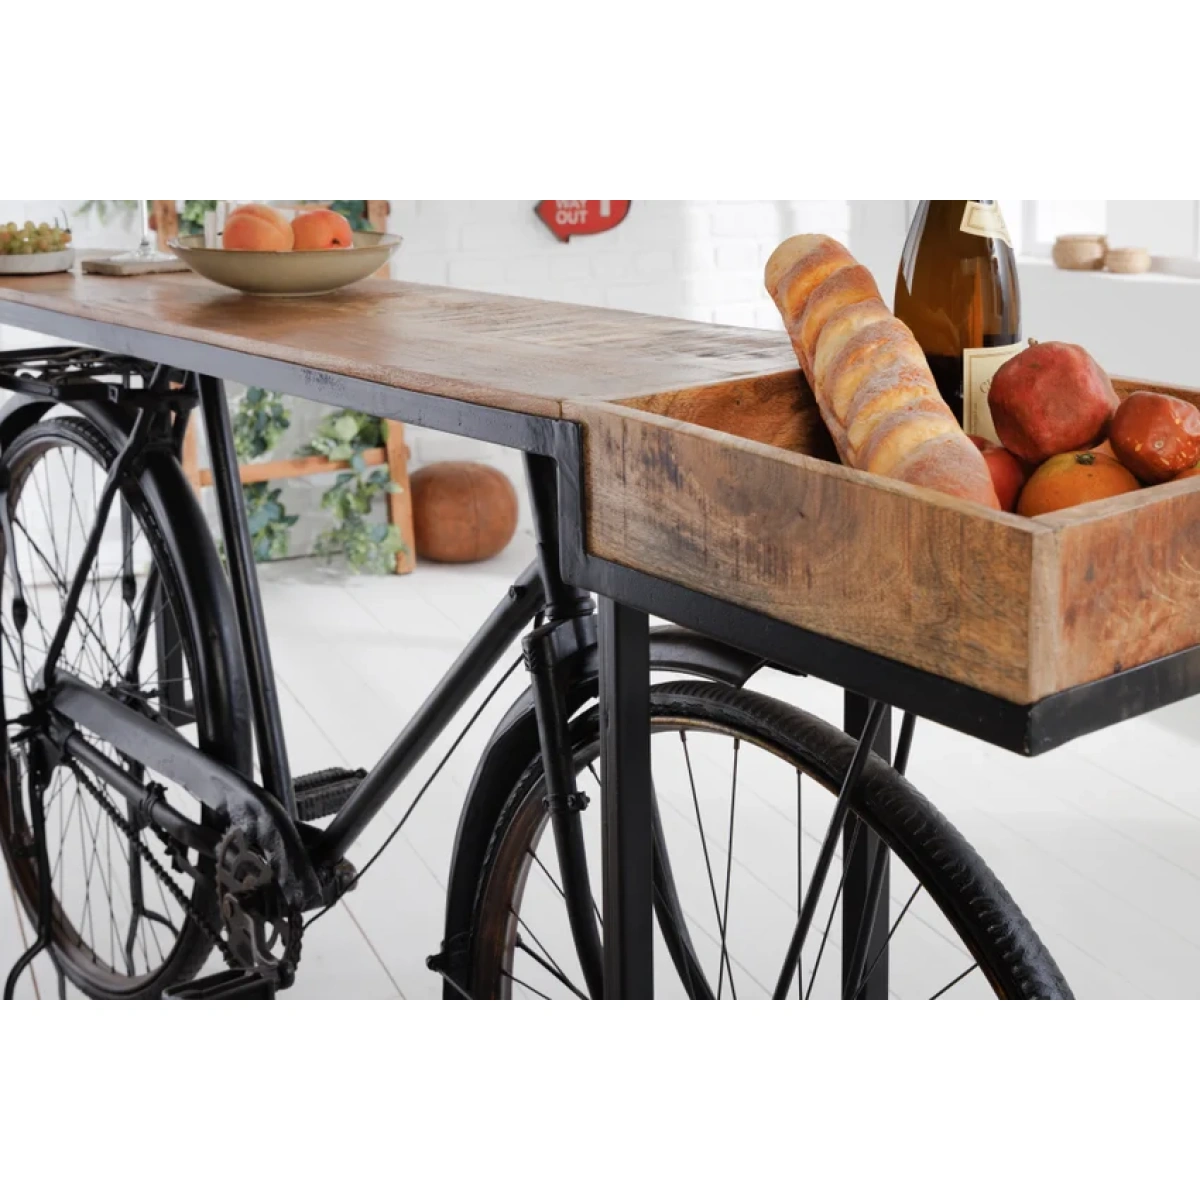 barek-rower-kolor-bialy-czarny-blat-drewno-mango-194x38cm-4